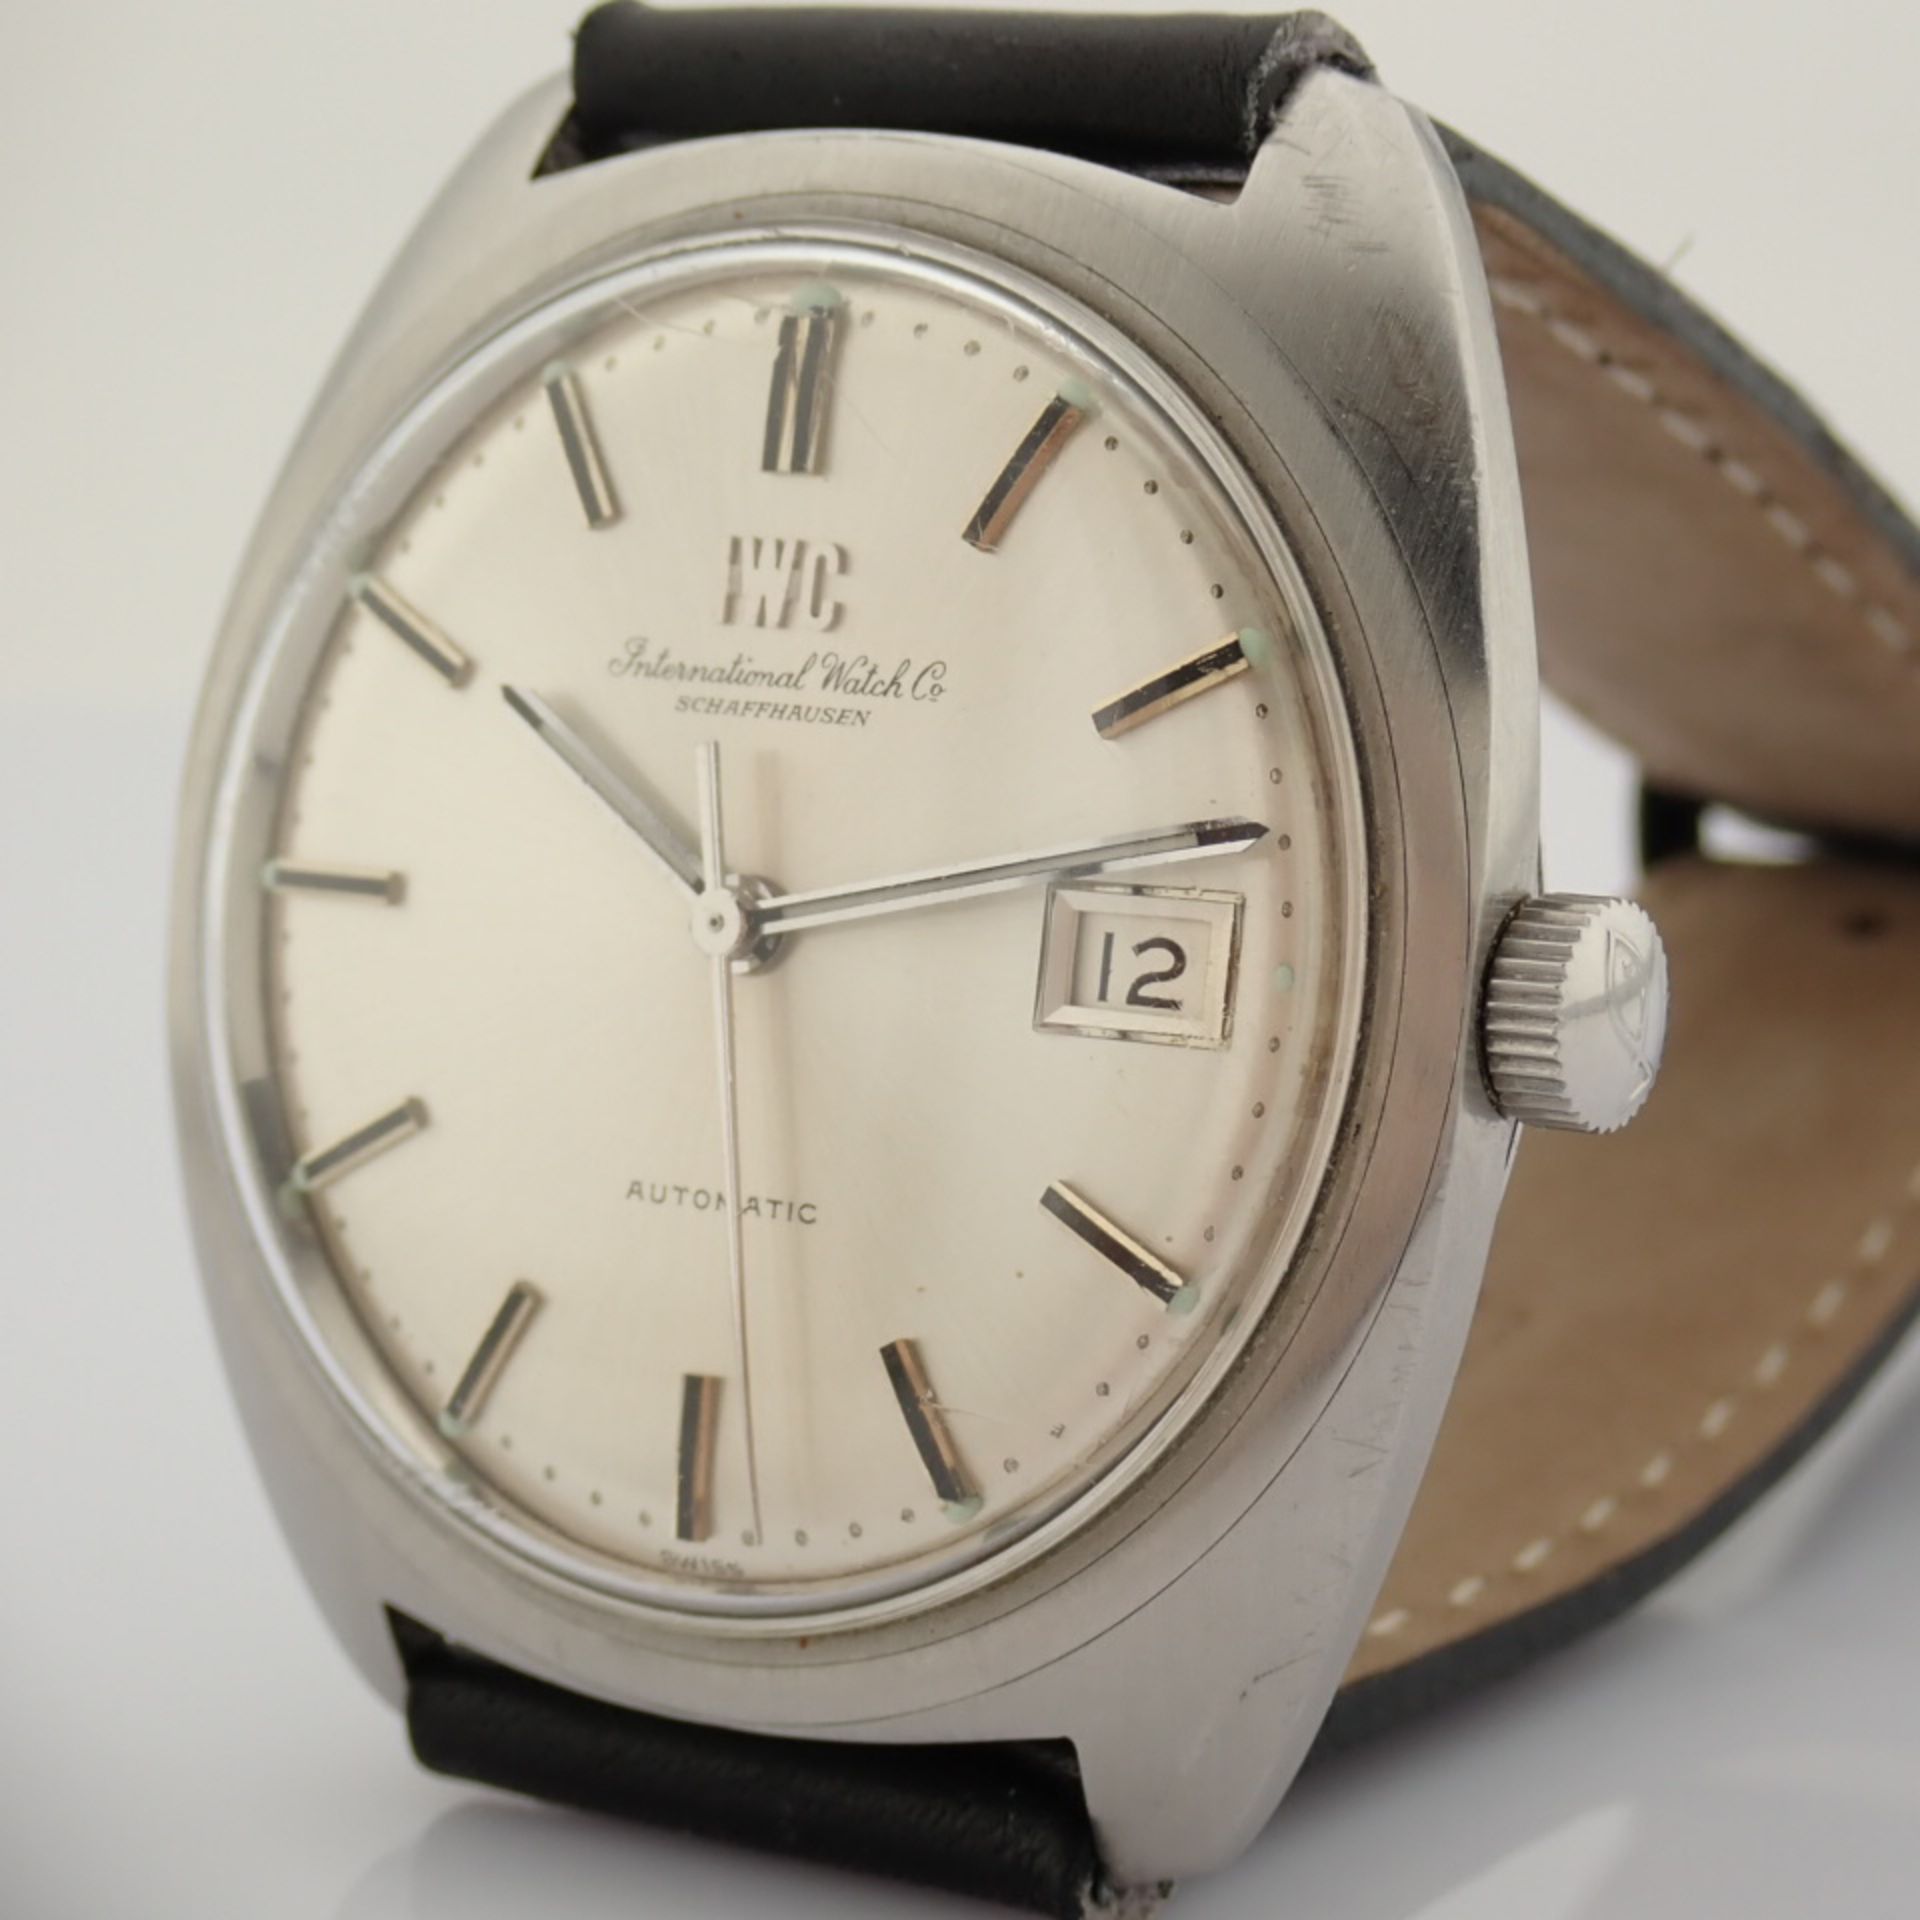 IWC / 1975 Automatic - Gentlmen's Steel Wrist Watch - Image 3 of 10